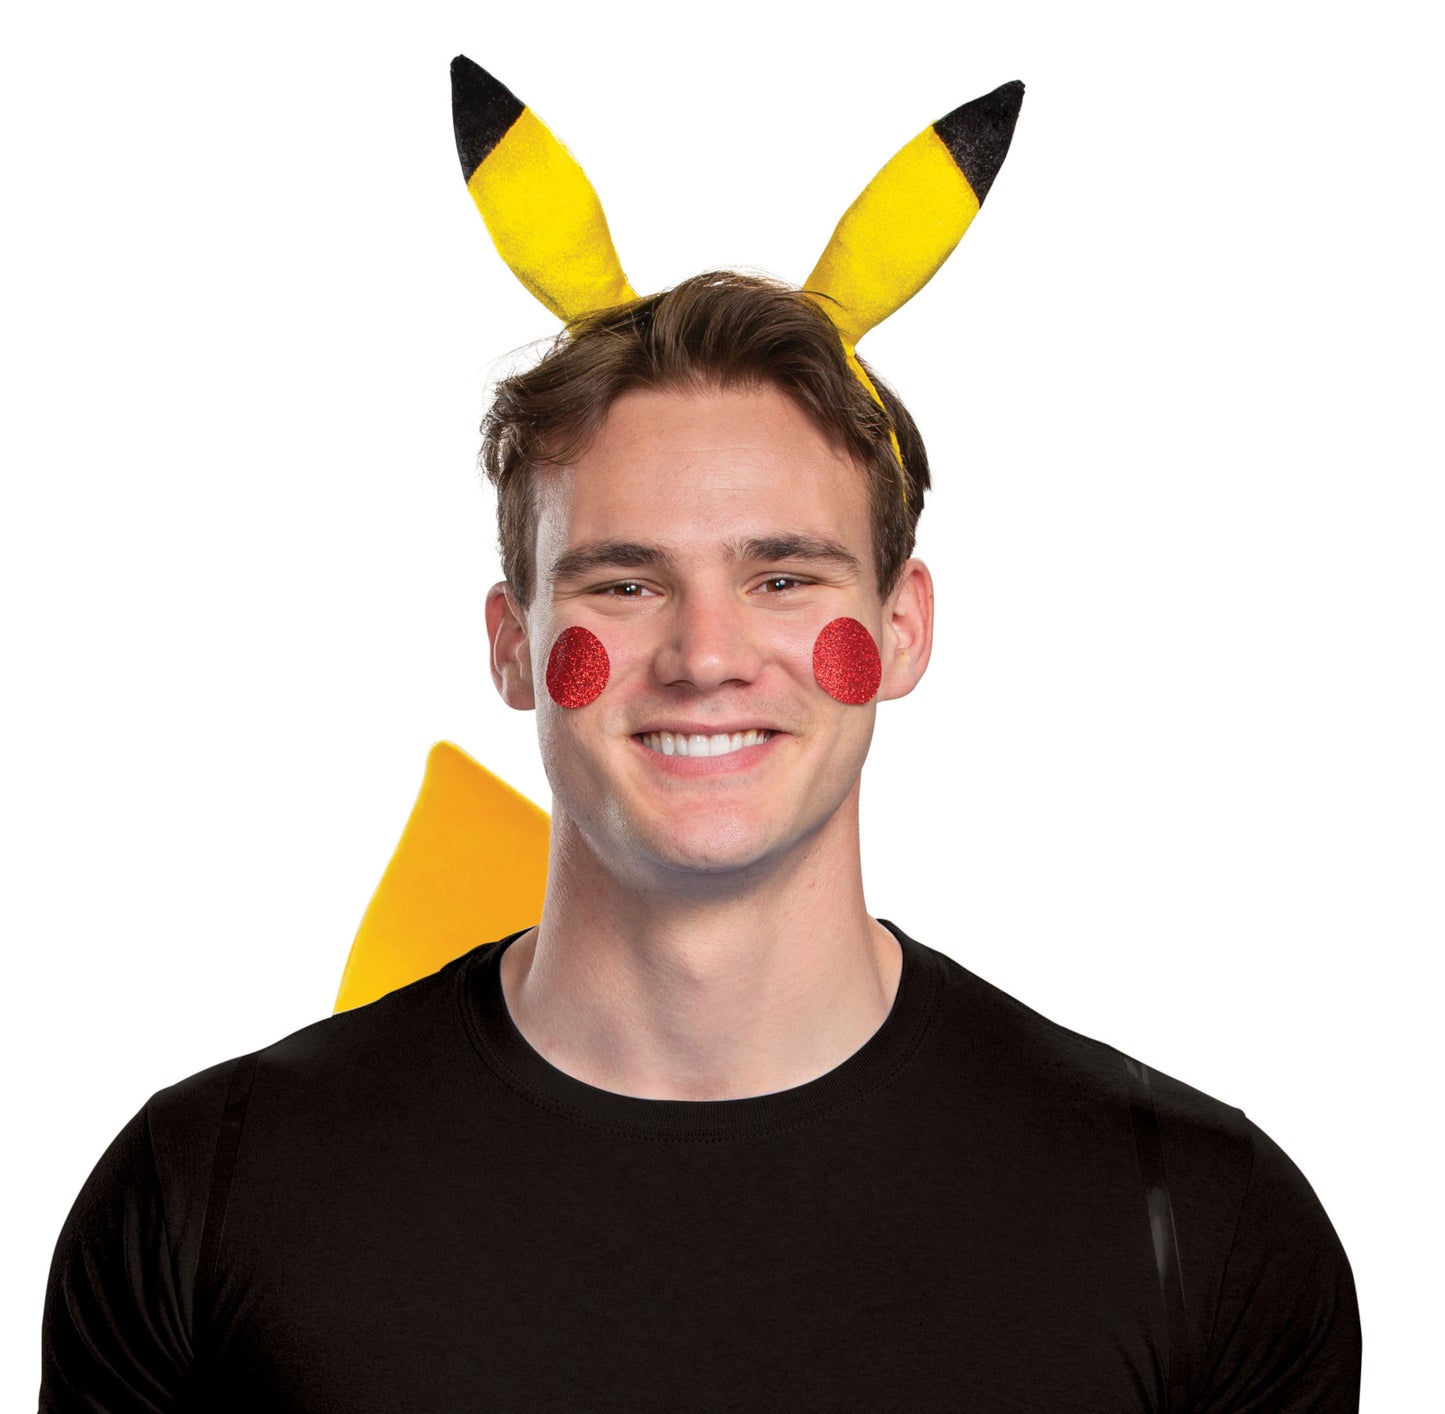 Pikachu Headband & Tail Accessory Kit